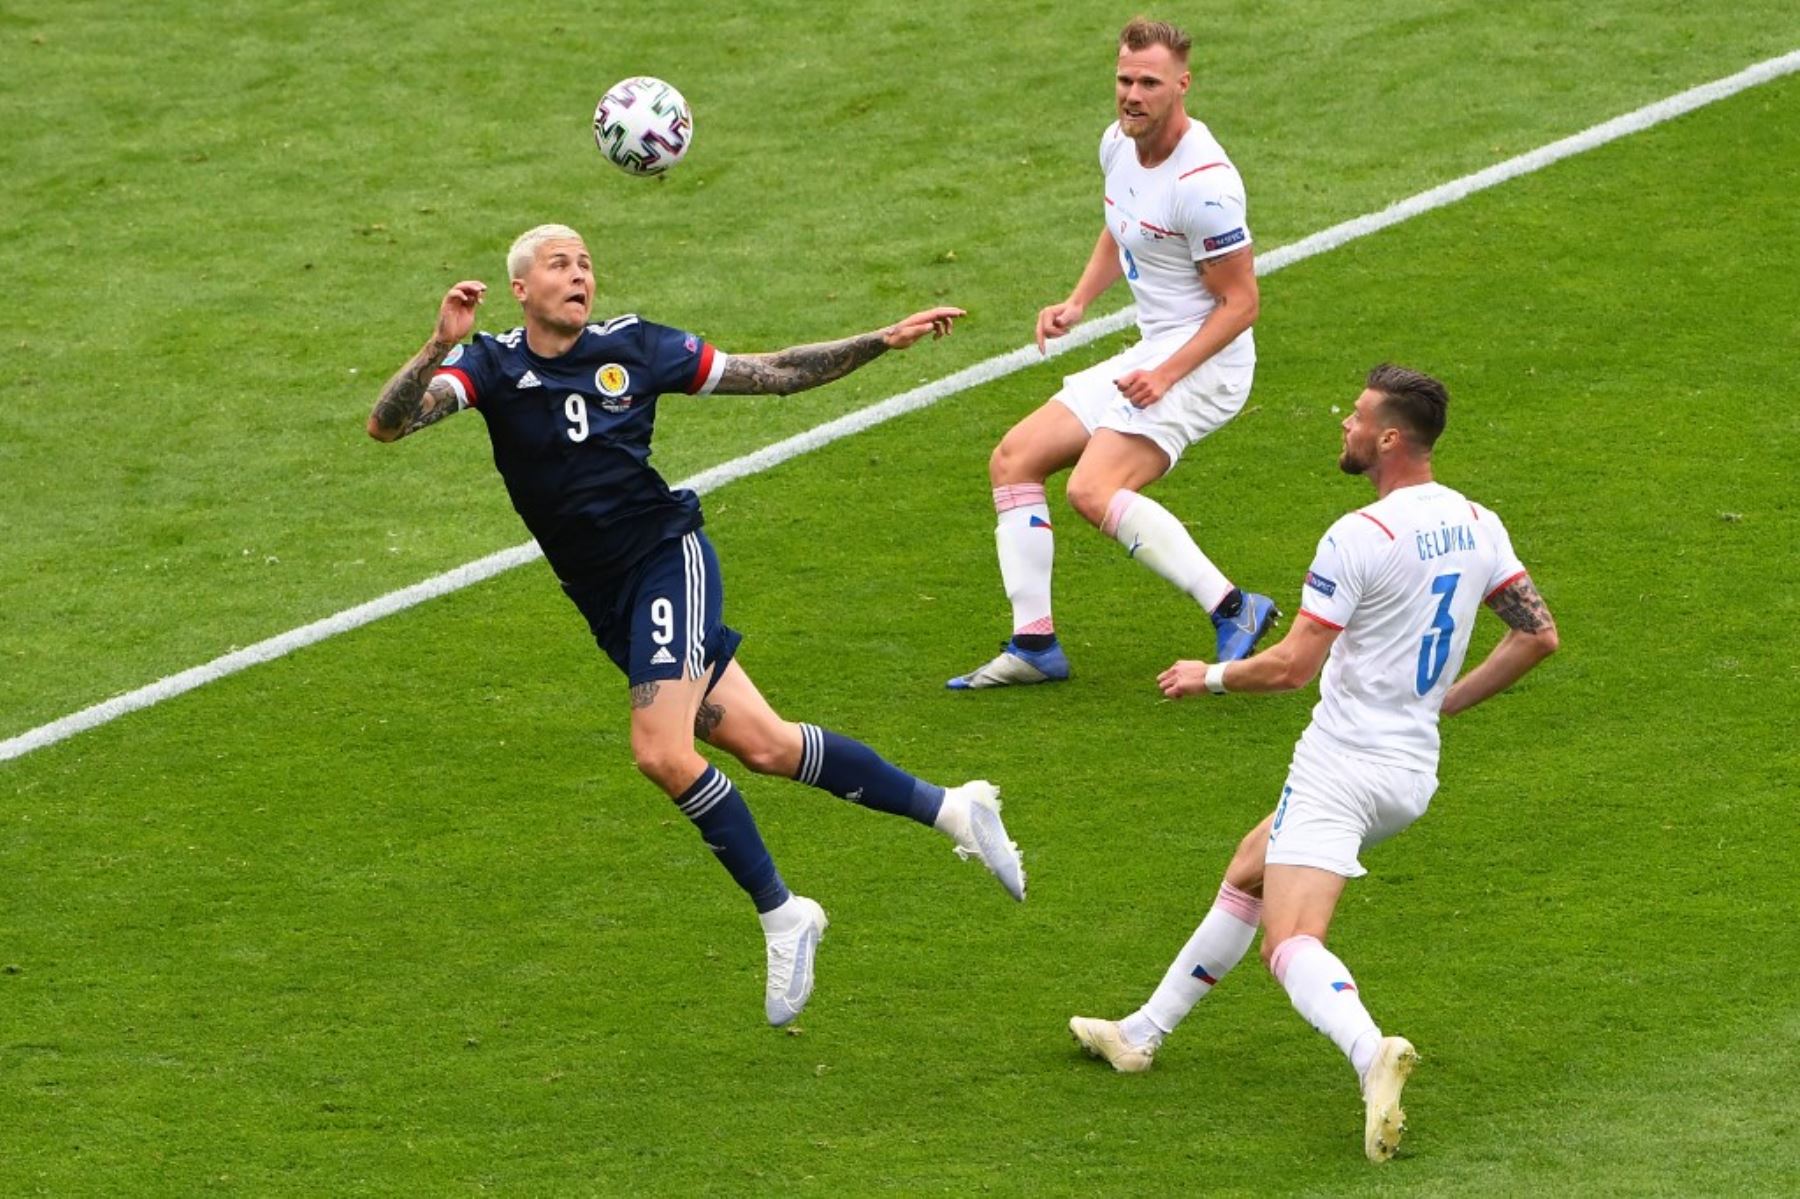 El delantero de Escocia Lyndon Dykes cabecea el balón durante el partido de fútbol del Grupo D de la UEFA EURO 2020 entre Escocia y República Checa en Hampden Park en Glasgow el 14 de junio de 2021. Foto: AFP